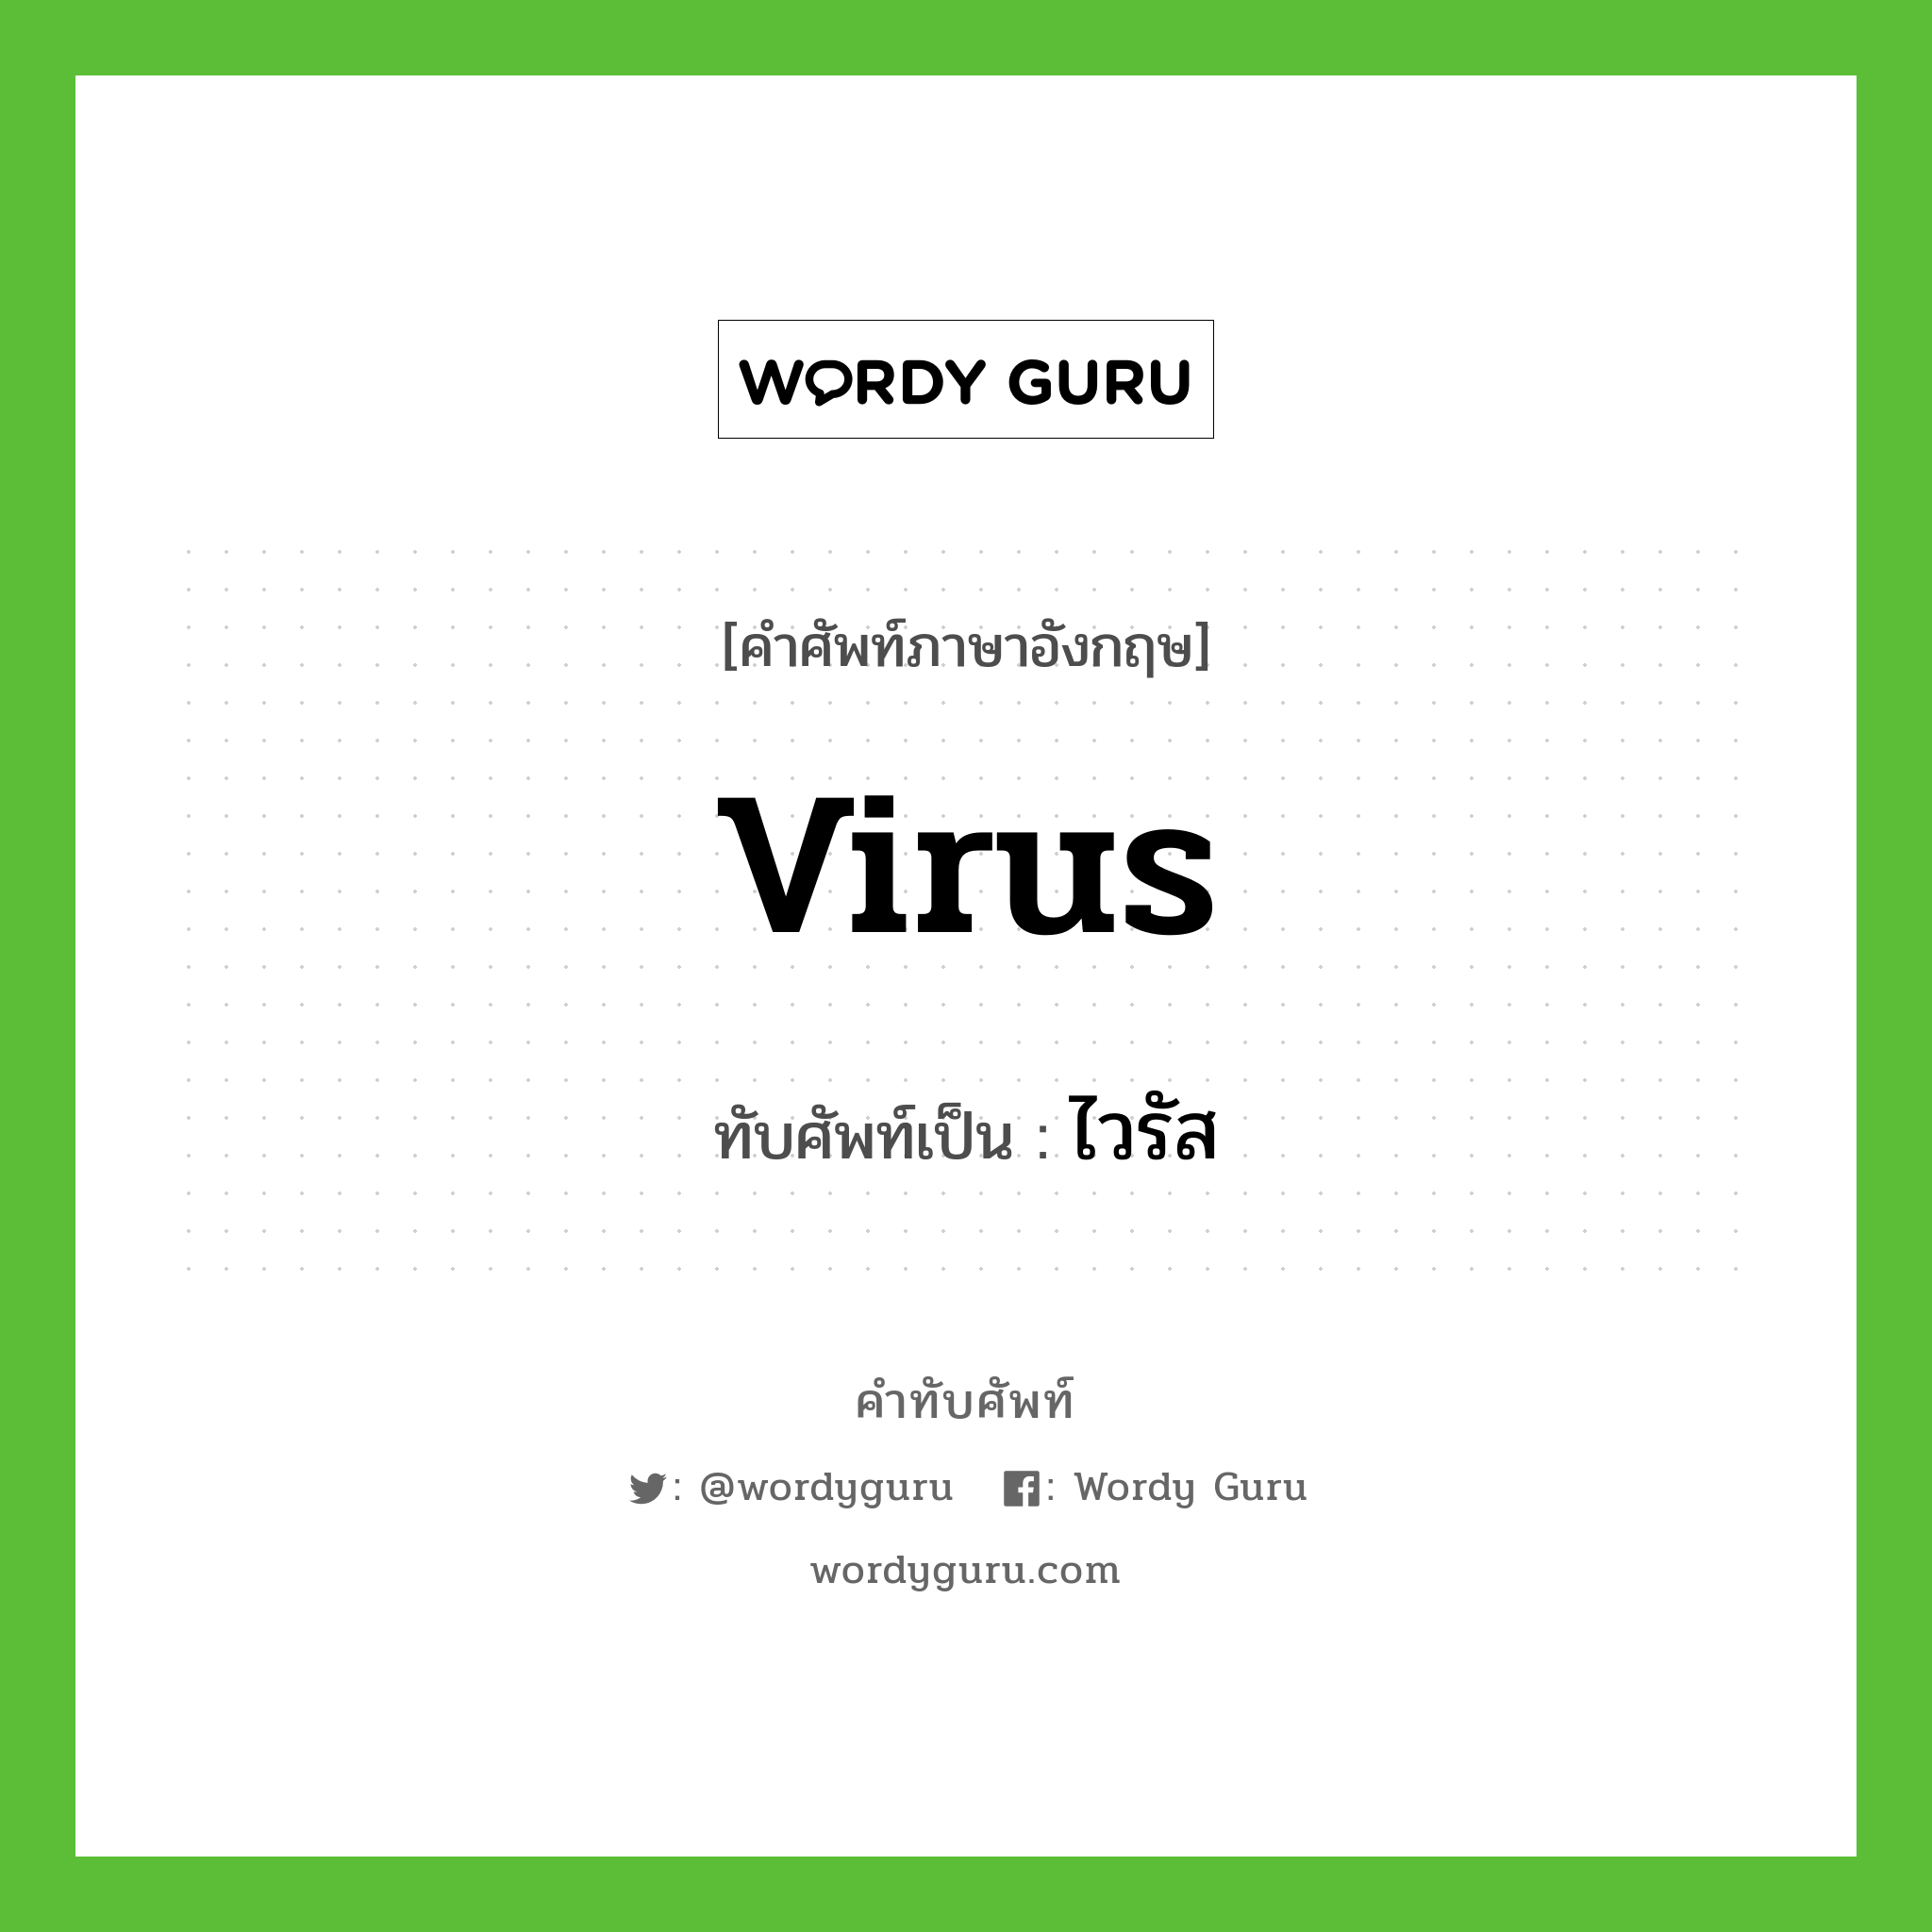 ไวรัส เขียนอย่างไร?, คำศัพท์ภาษาอังกฤษ ไวรัส ทับศัพท์เป็น virus